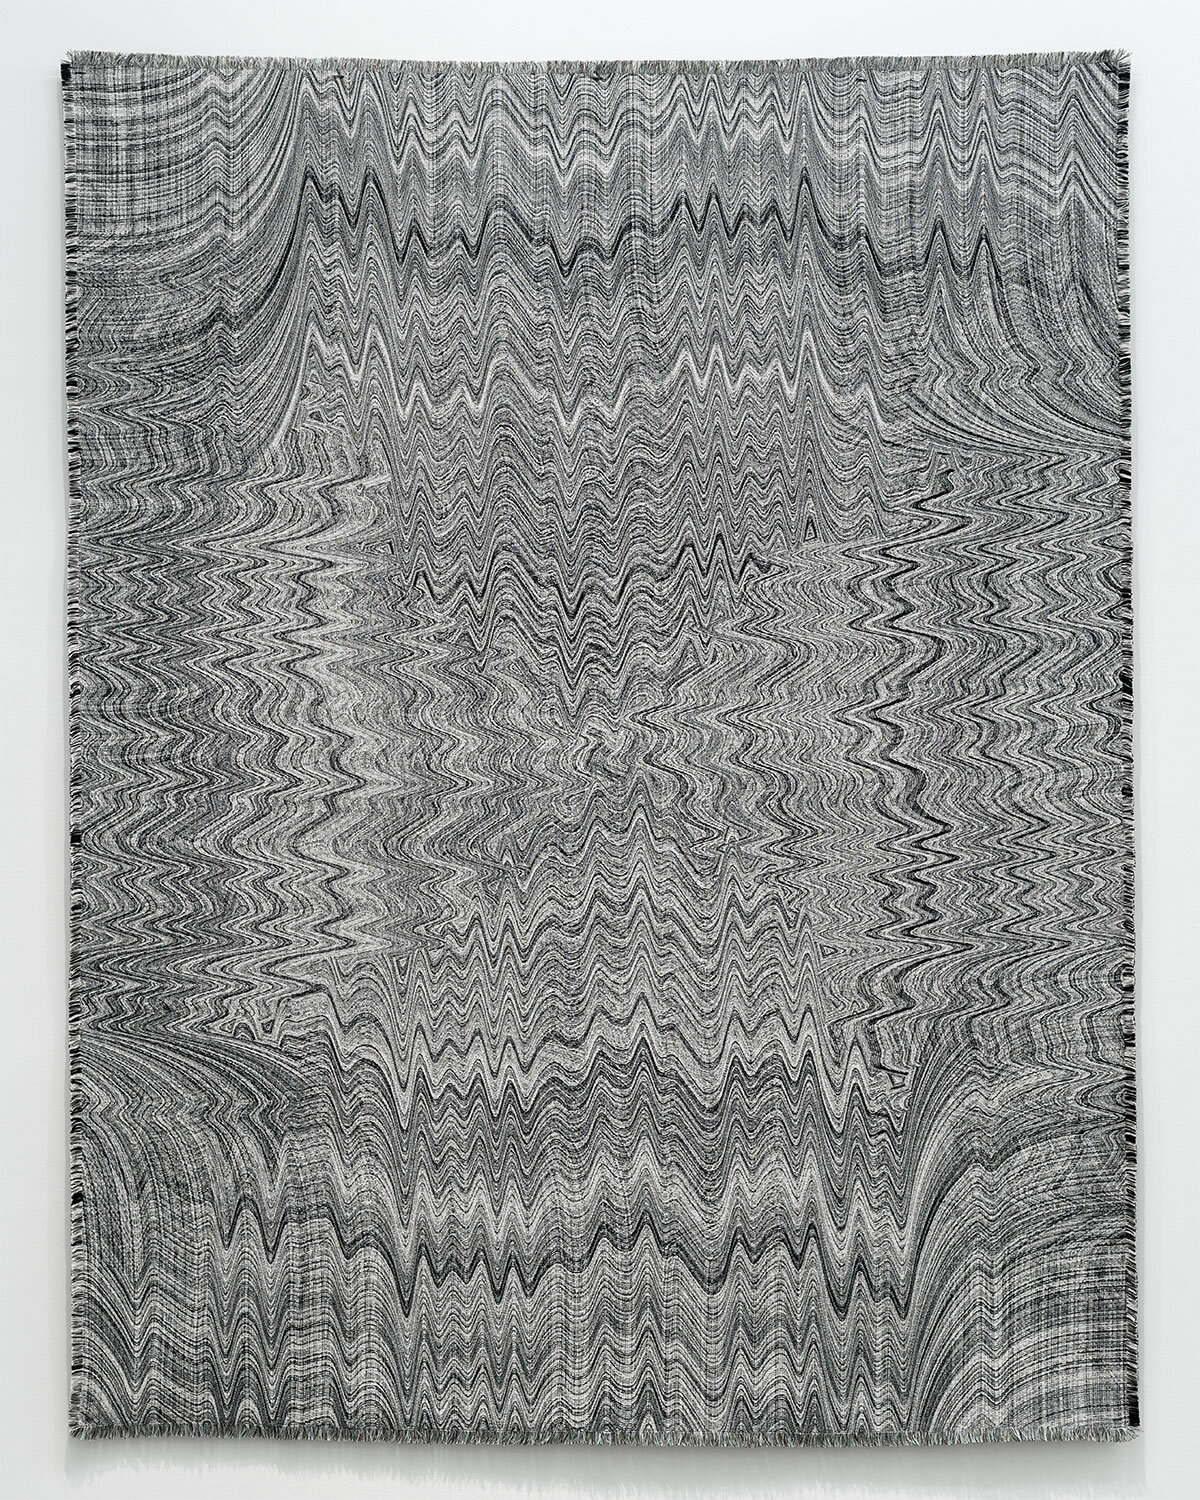 Embodied Objects Weavings — Laura Splan